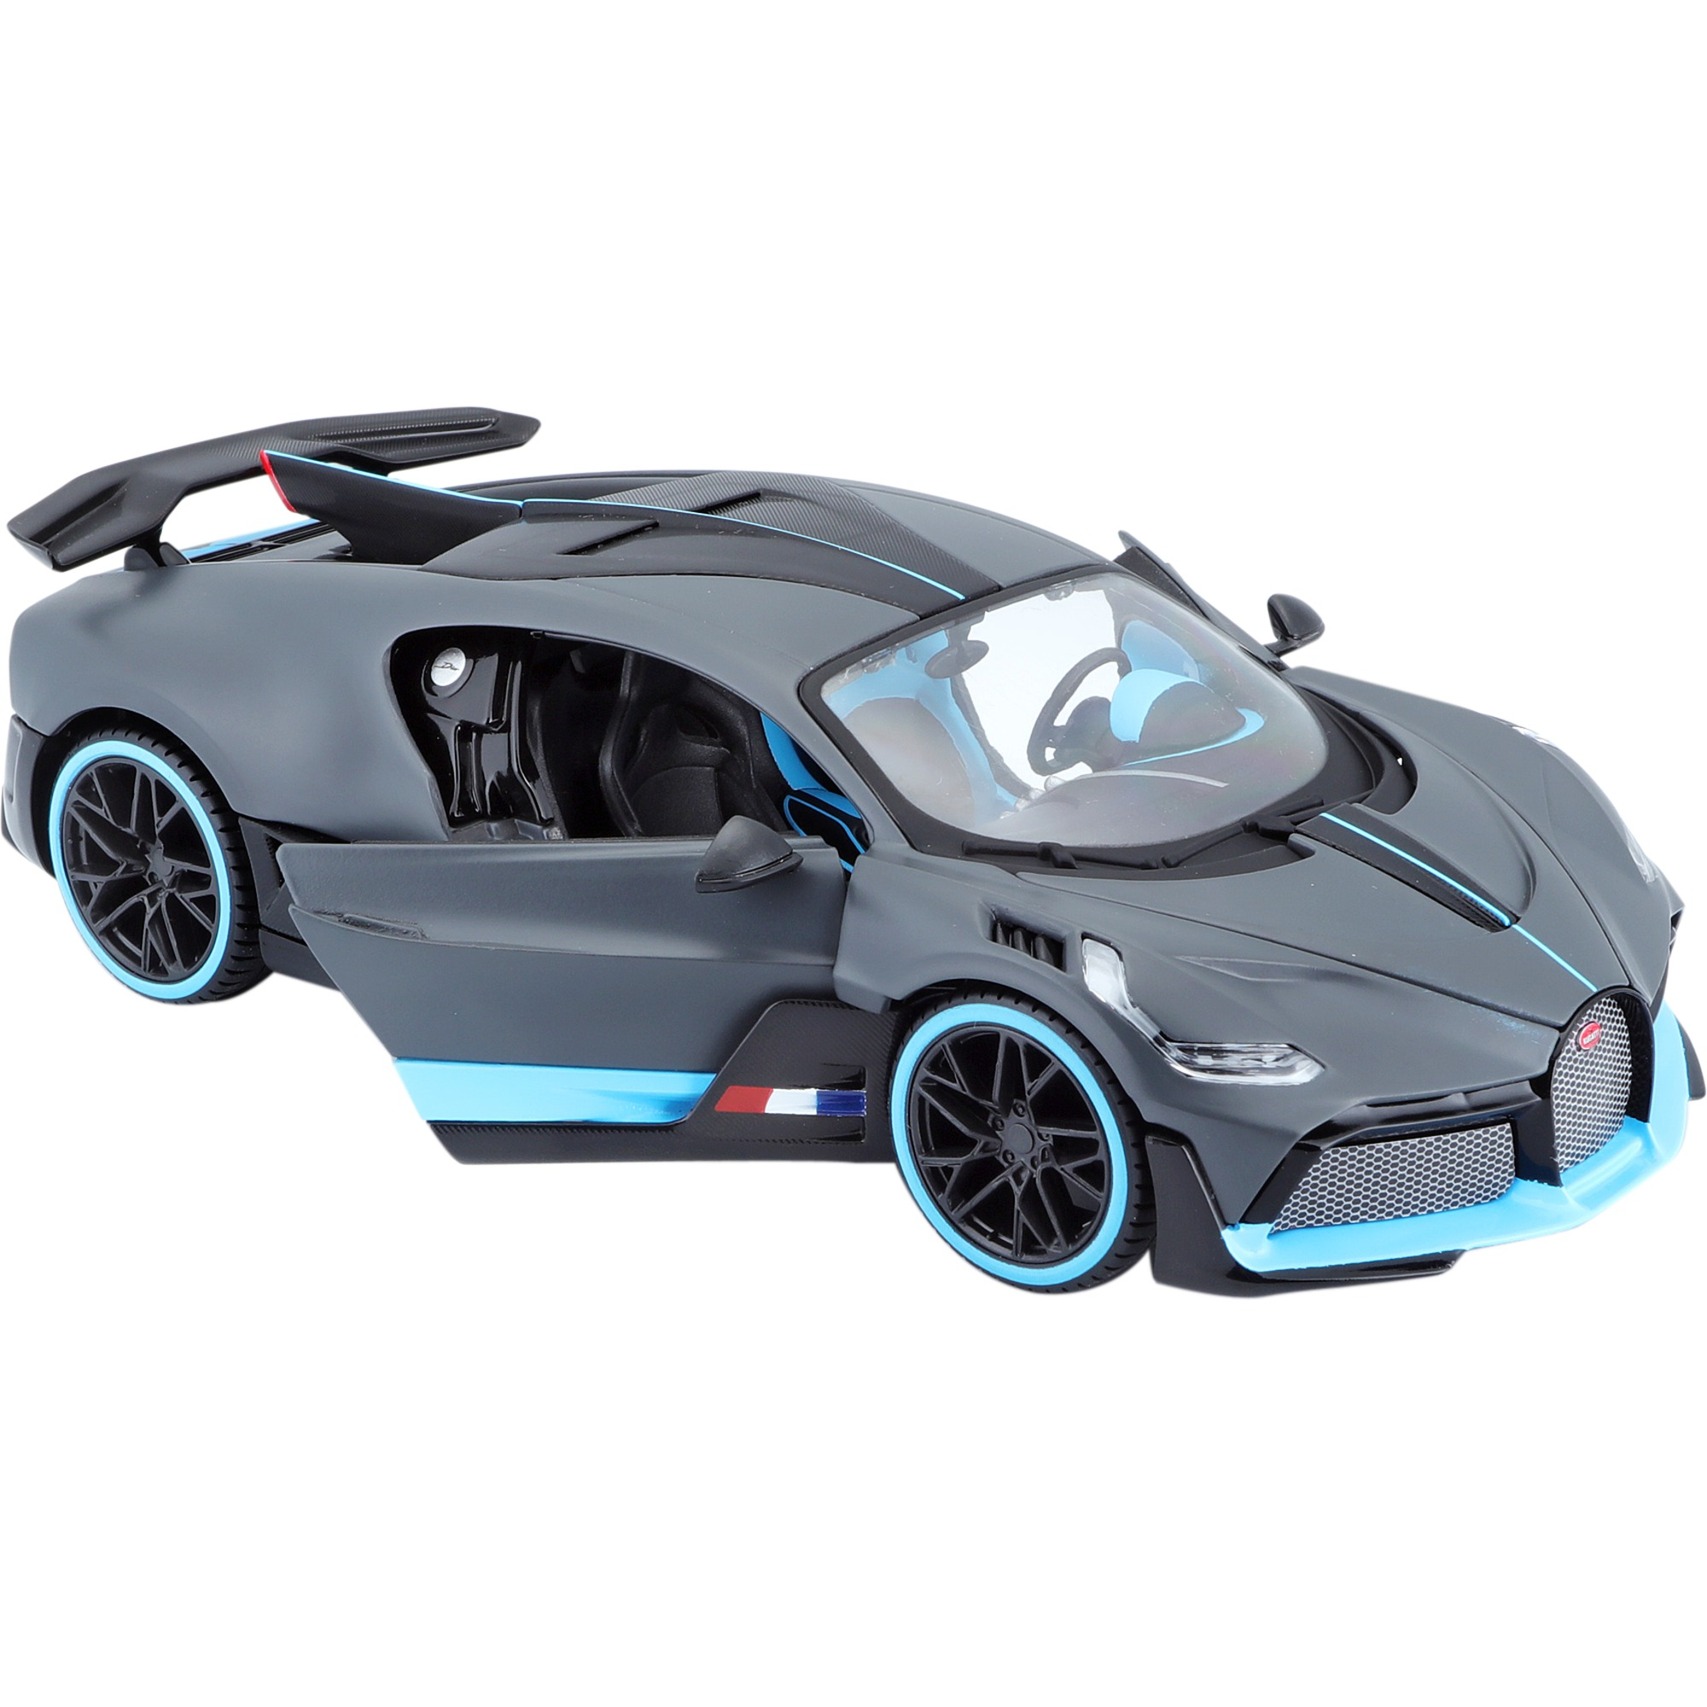 Image of Alternate - Bugatti Divo, Modellfahrzeug online einkaufen bei Alternate